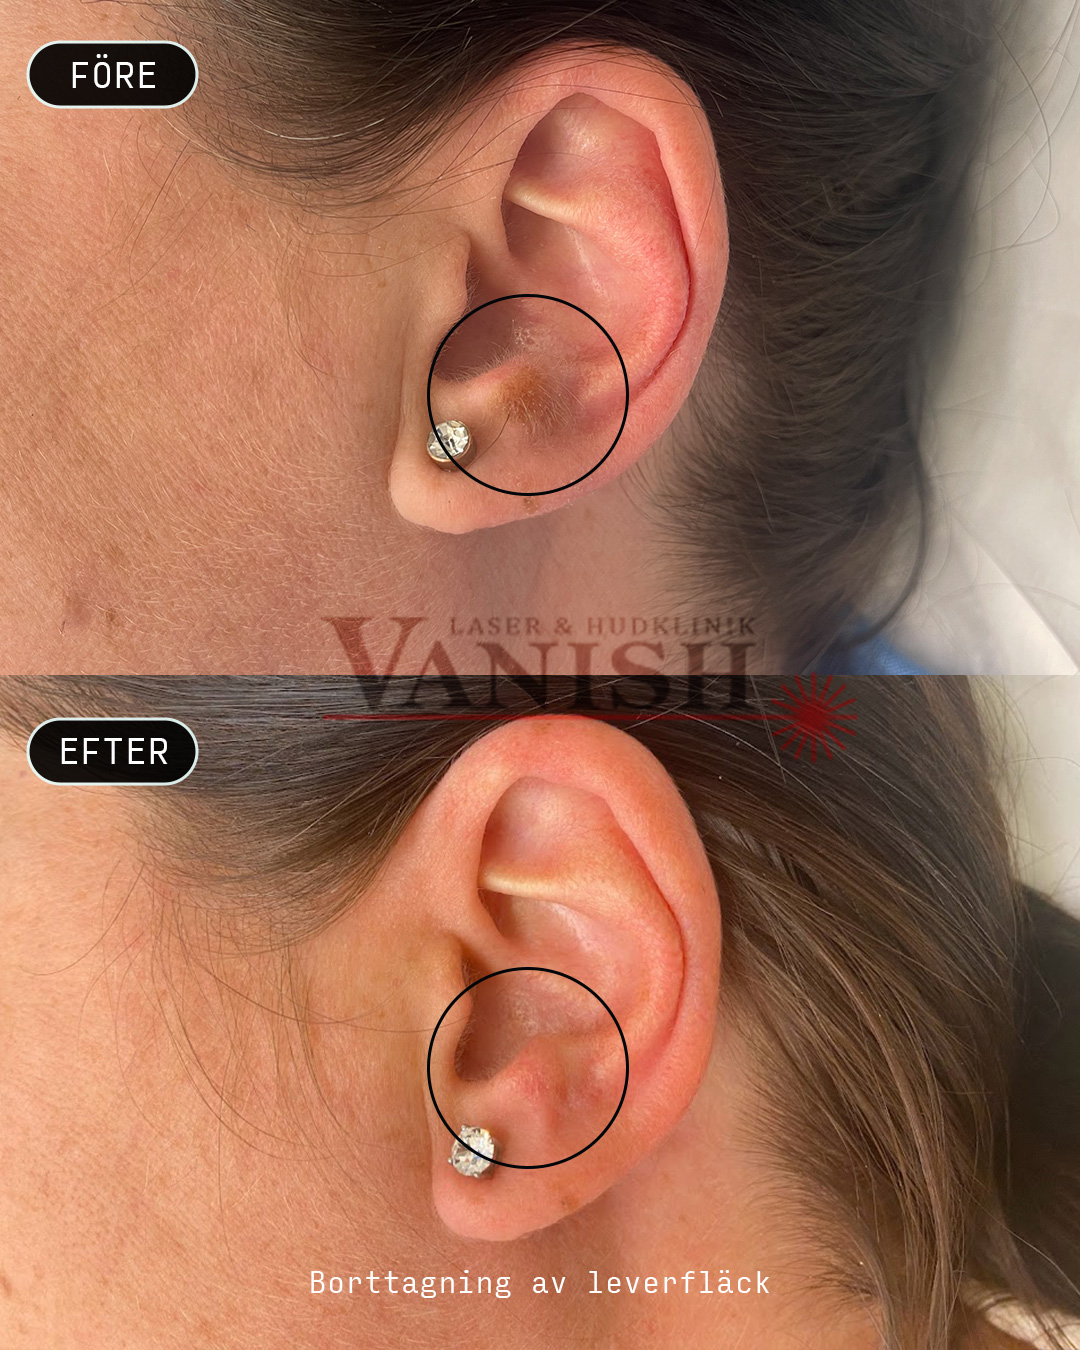 Laserbehandling leverfläck öra